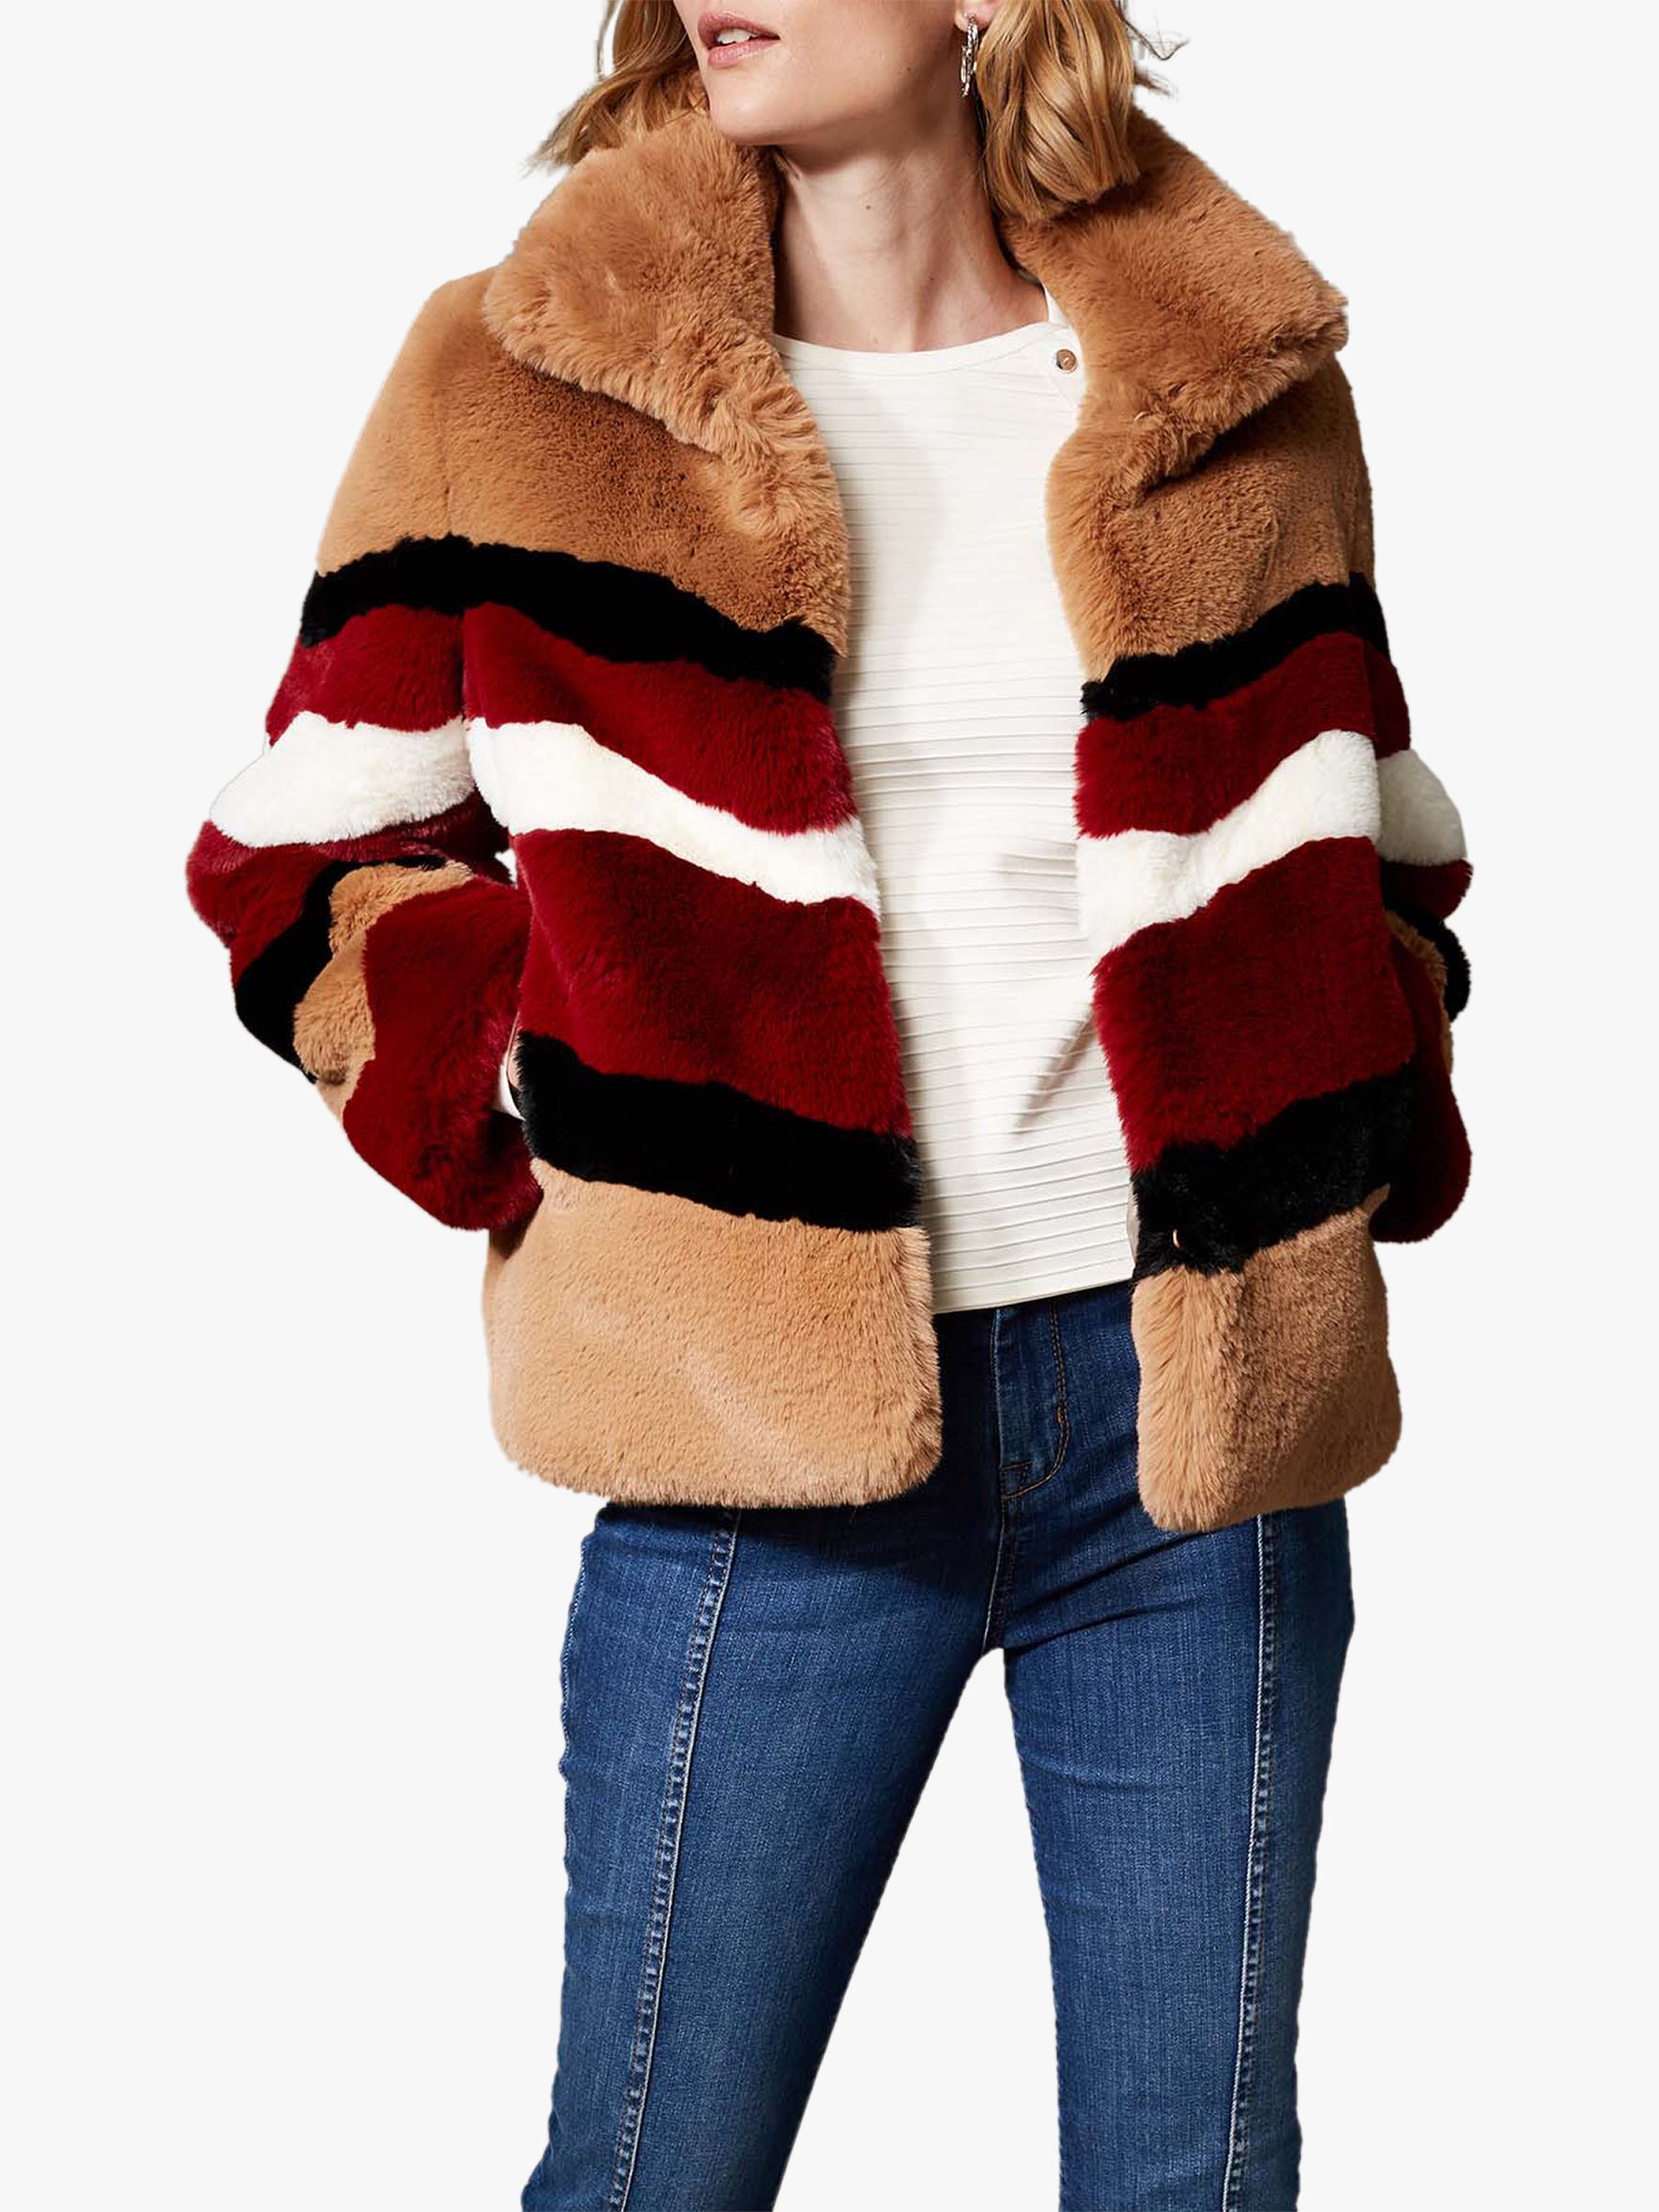 Karen Millen Faux Fur Colourblock Coat, Multi, 14